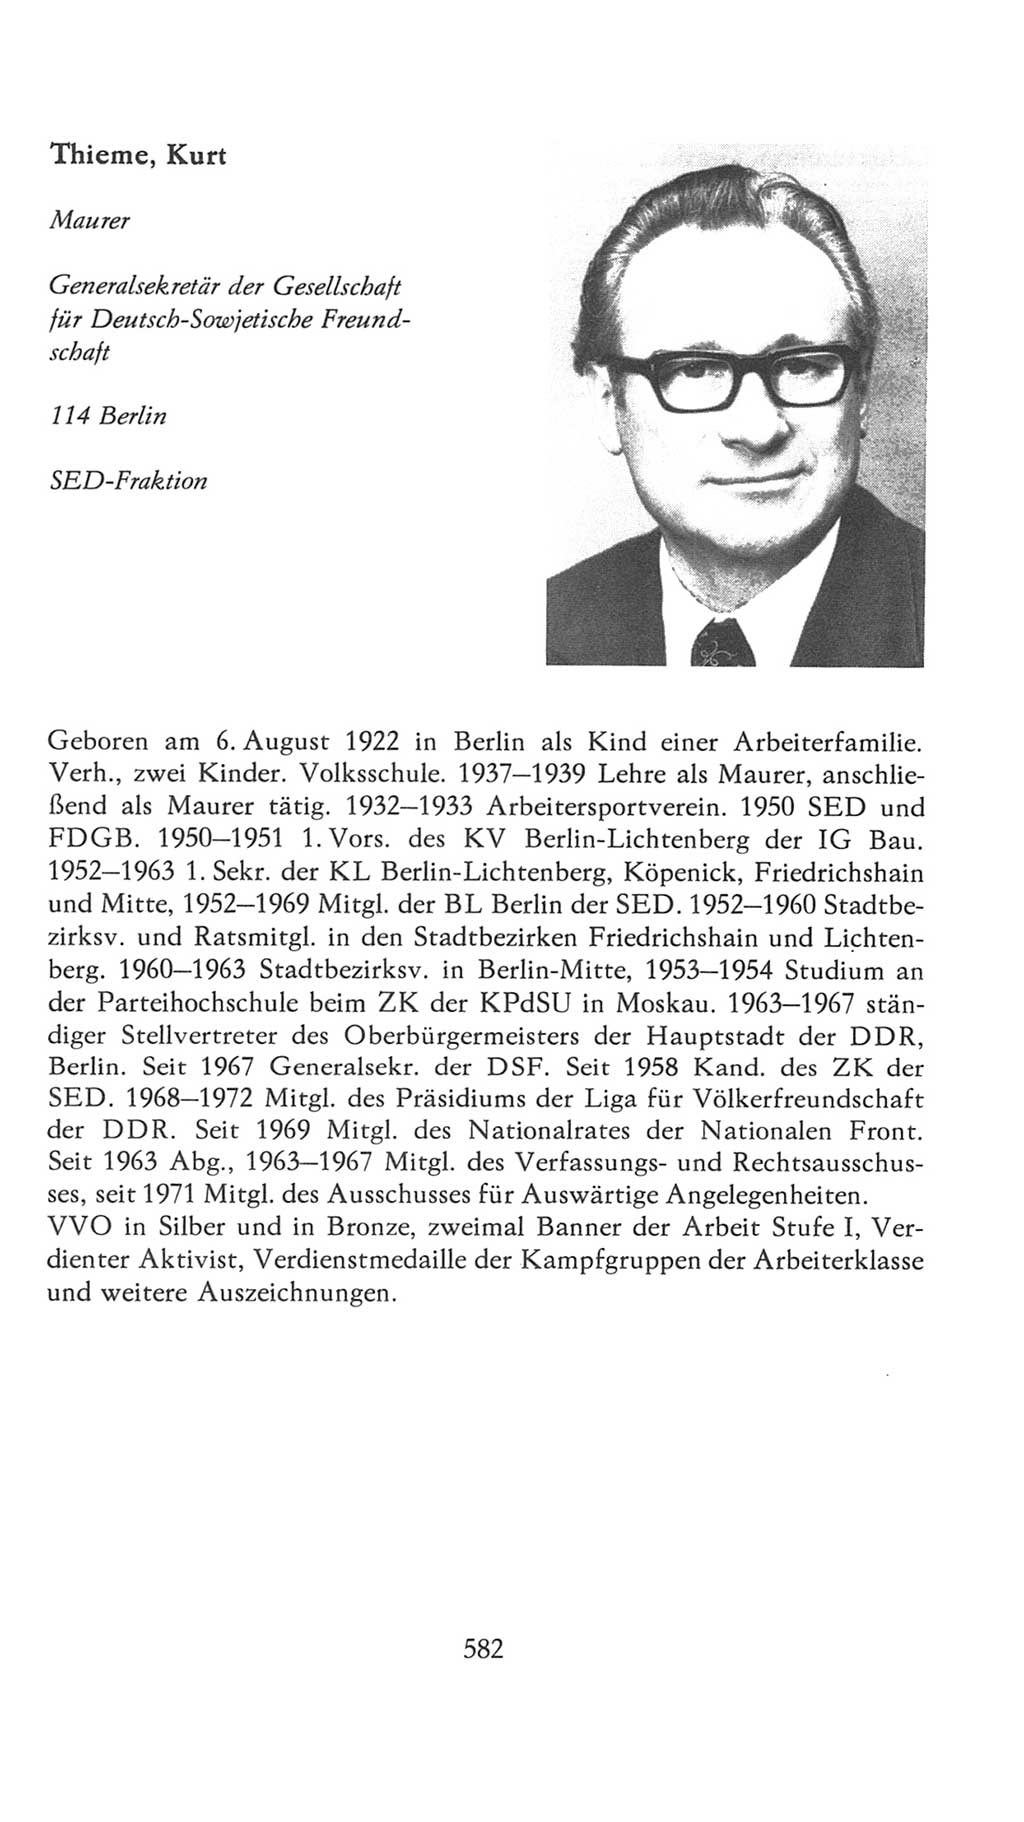 Volkskammer (VK) der Deutschen Demokratischen Republik (DDR), 7. Wahlperiode 1976-1981, Seite 582 (VK. DDR 7. WP. 1976-1981, S. 582)